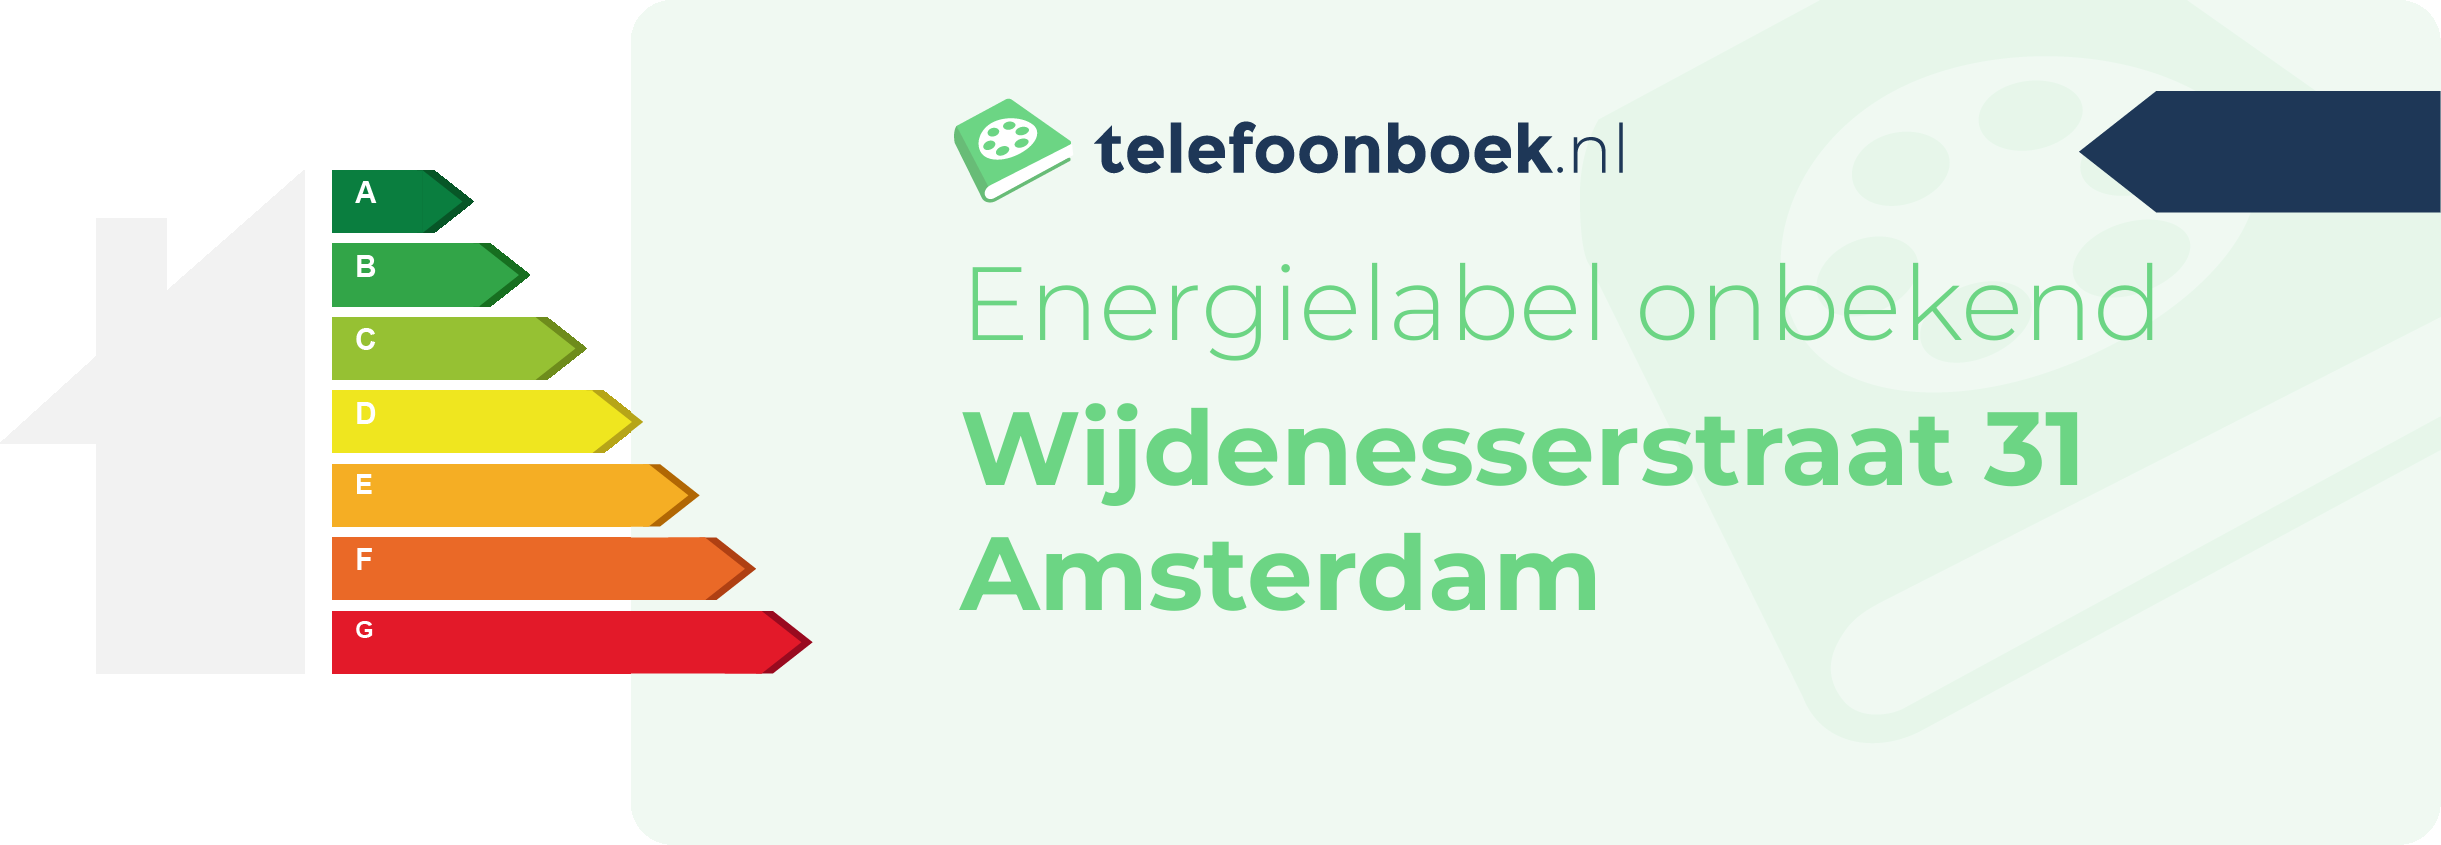 Energielabel Wijdenesserstraat 31 Amsterdam